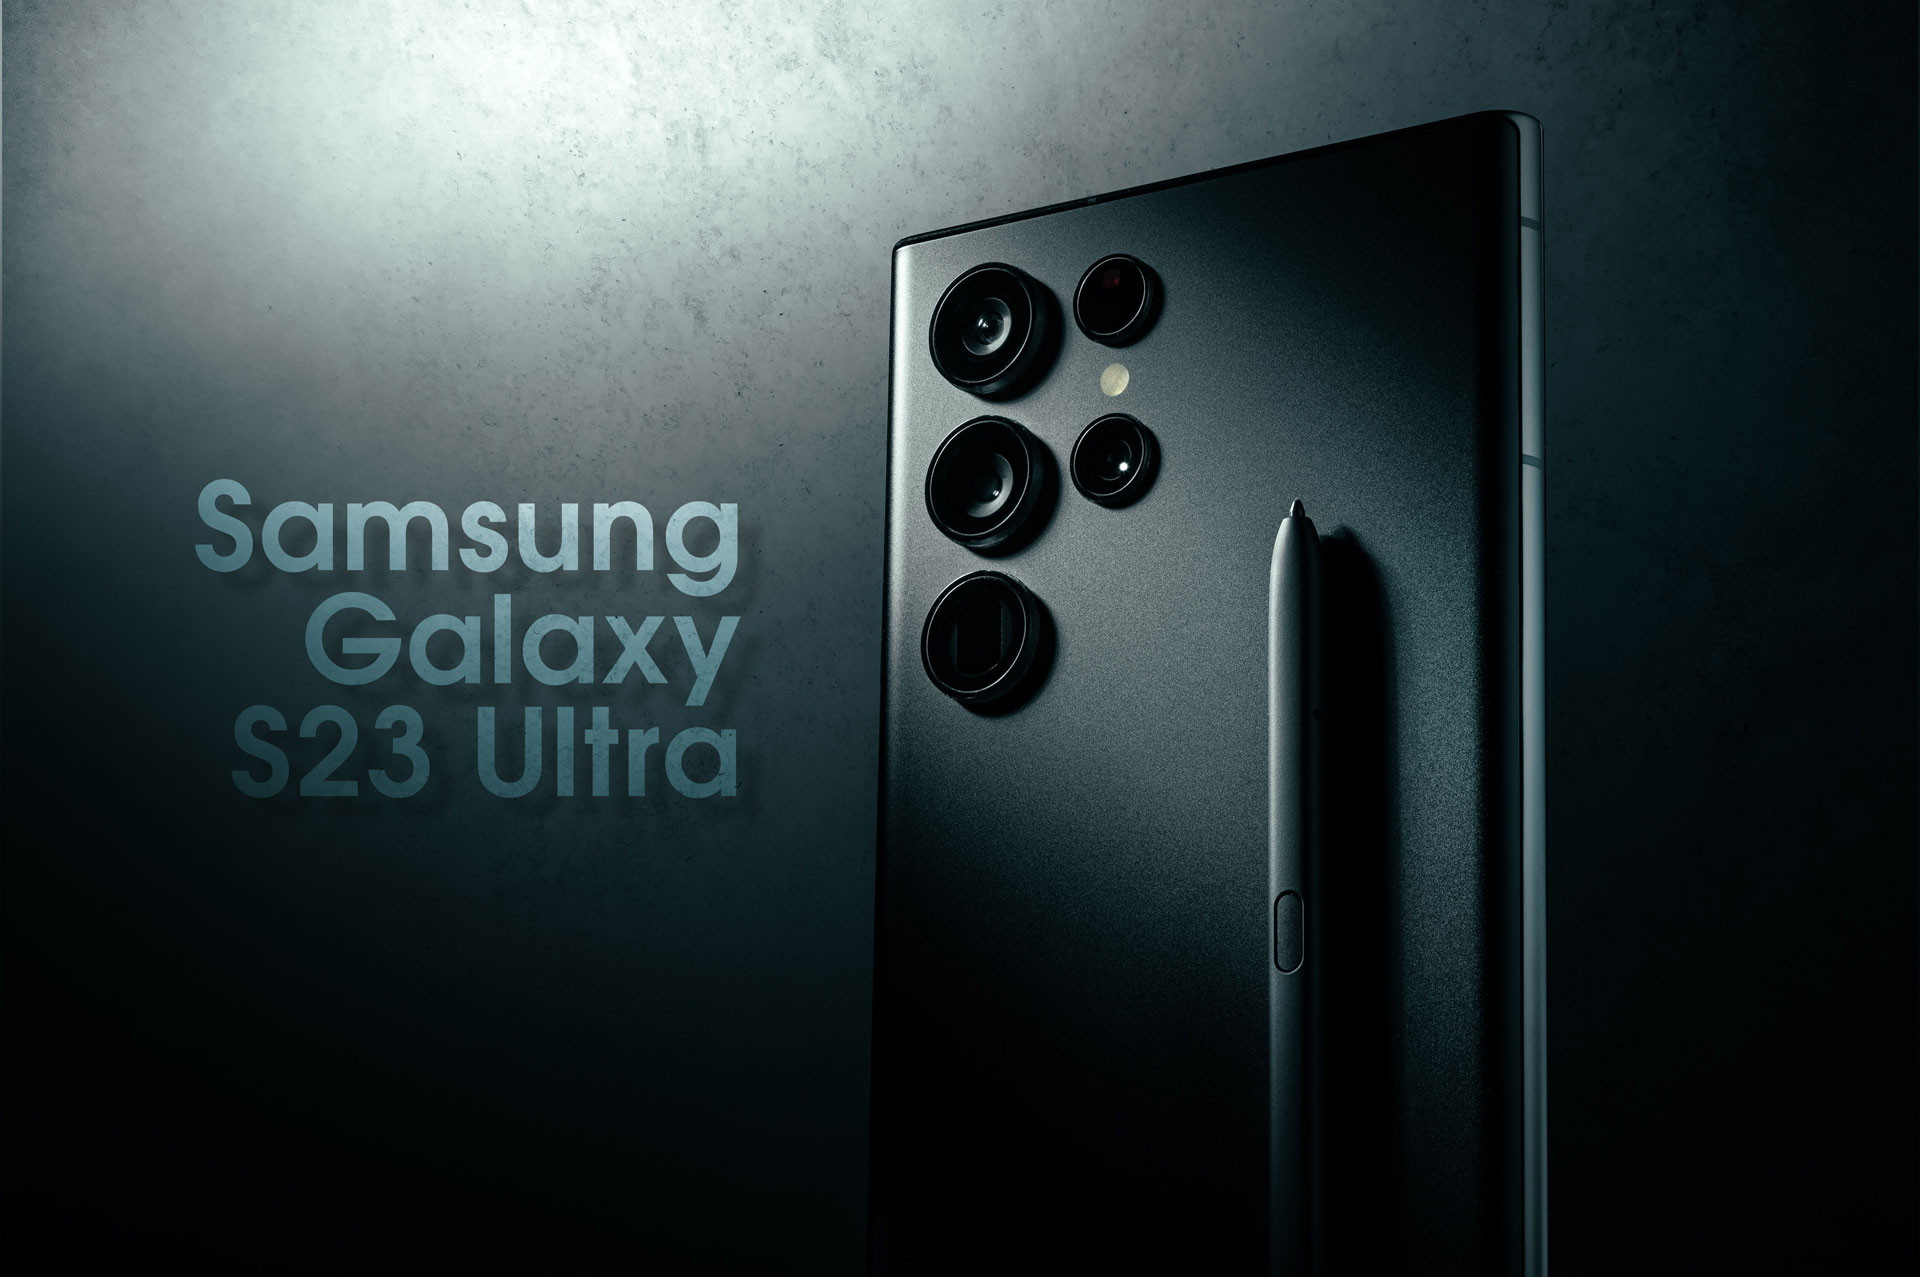 Samsung Galaxy S24 будет удивлять частотой обновления экрана